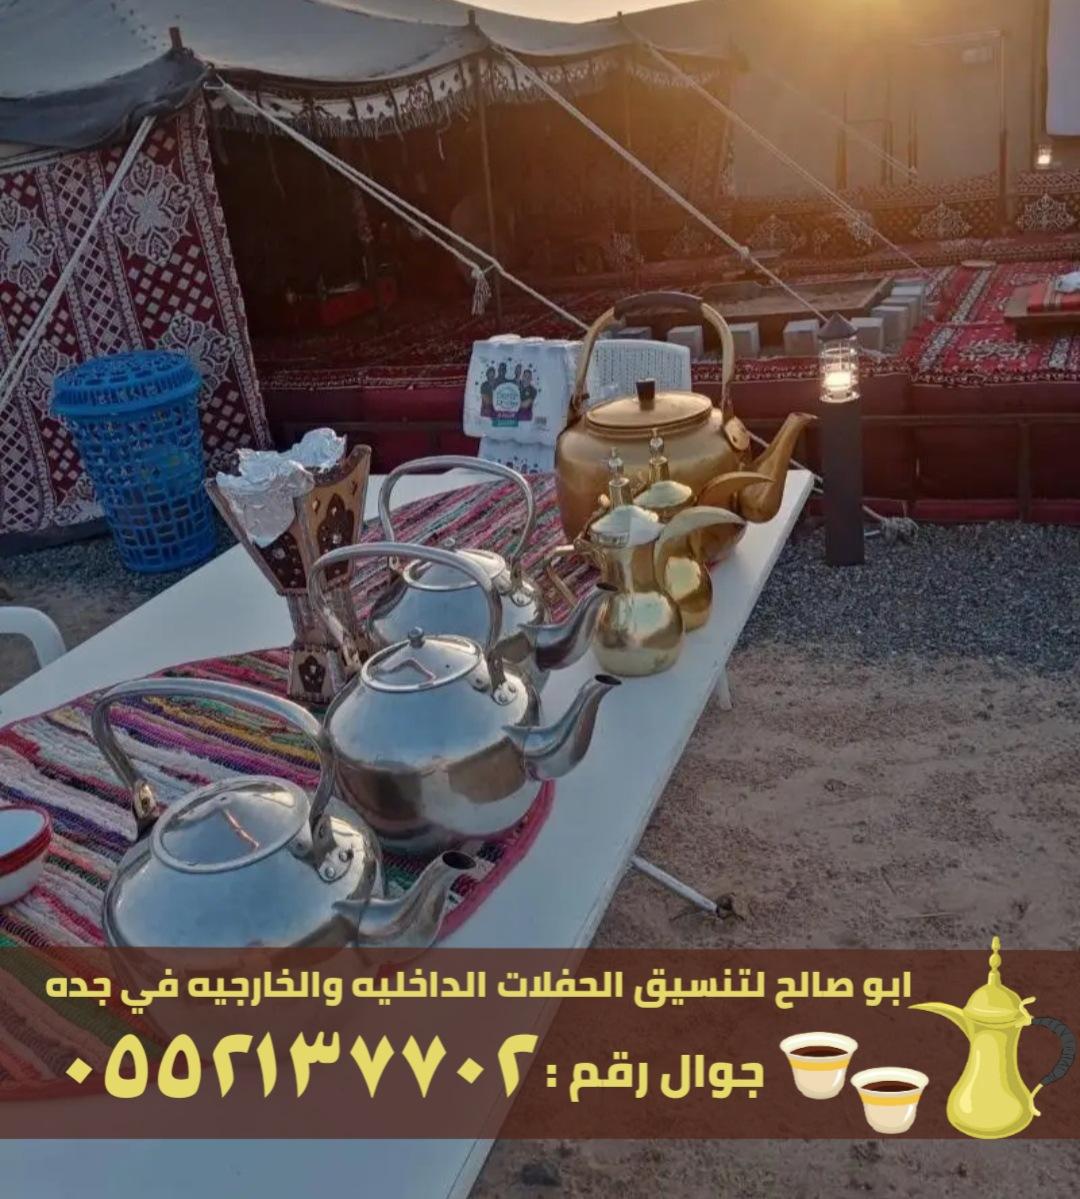 صبابين قهوة مباشرين في جدة,0552137702 650212679